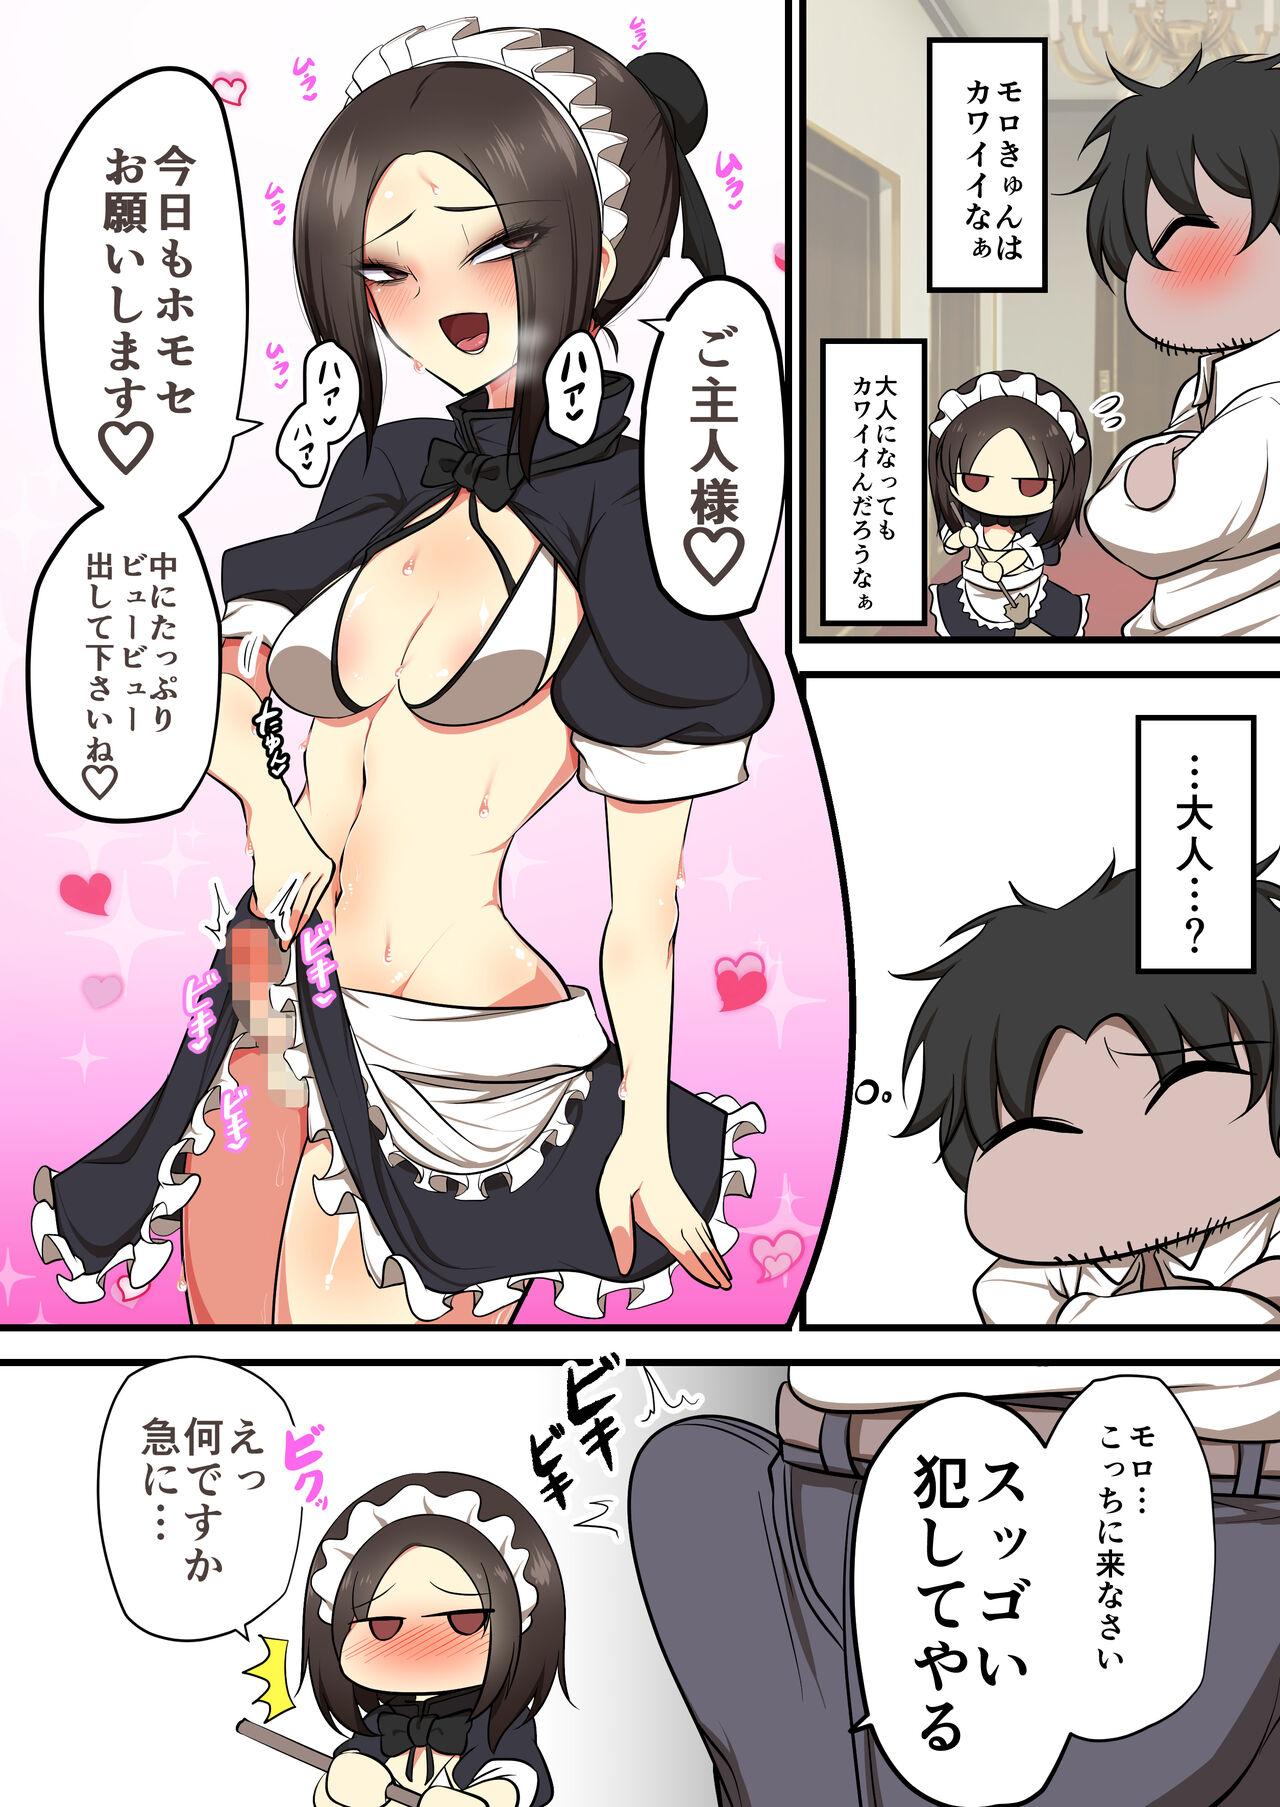 Asshole Omake Manga Tit - Page 6